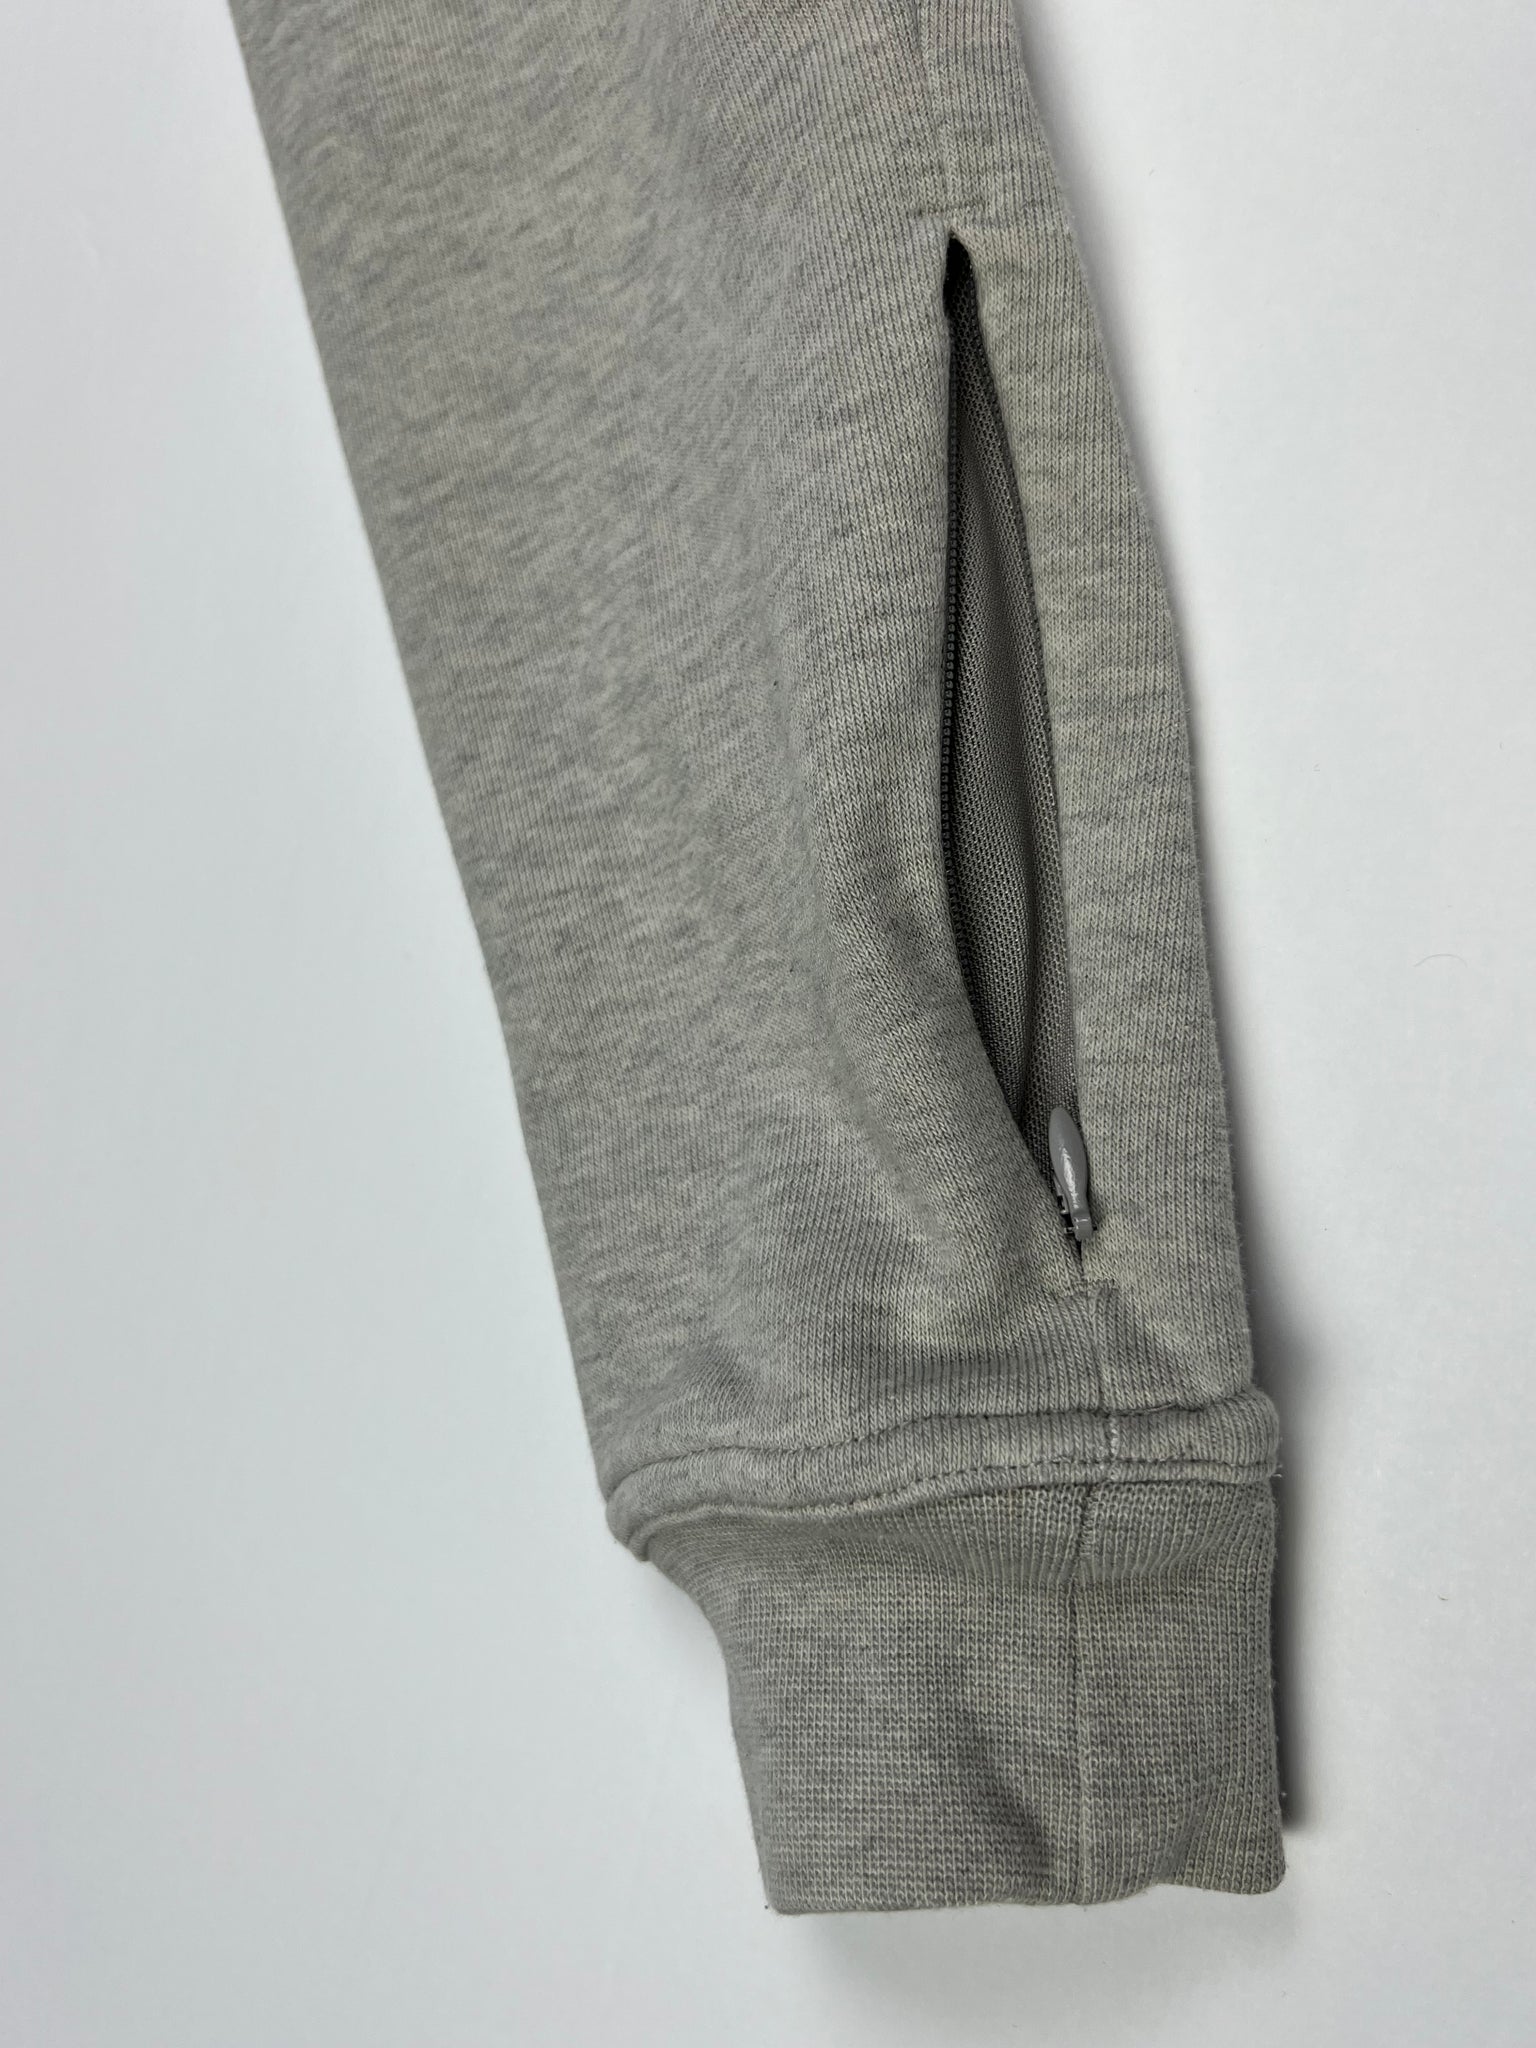 Women's Pre-Owned Gray Nike Funnel Neck Oversized Hood Sweatshirt